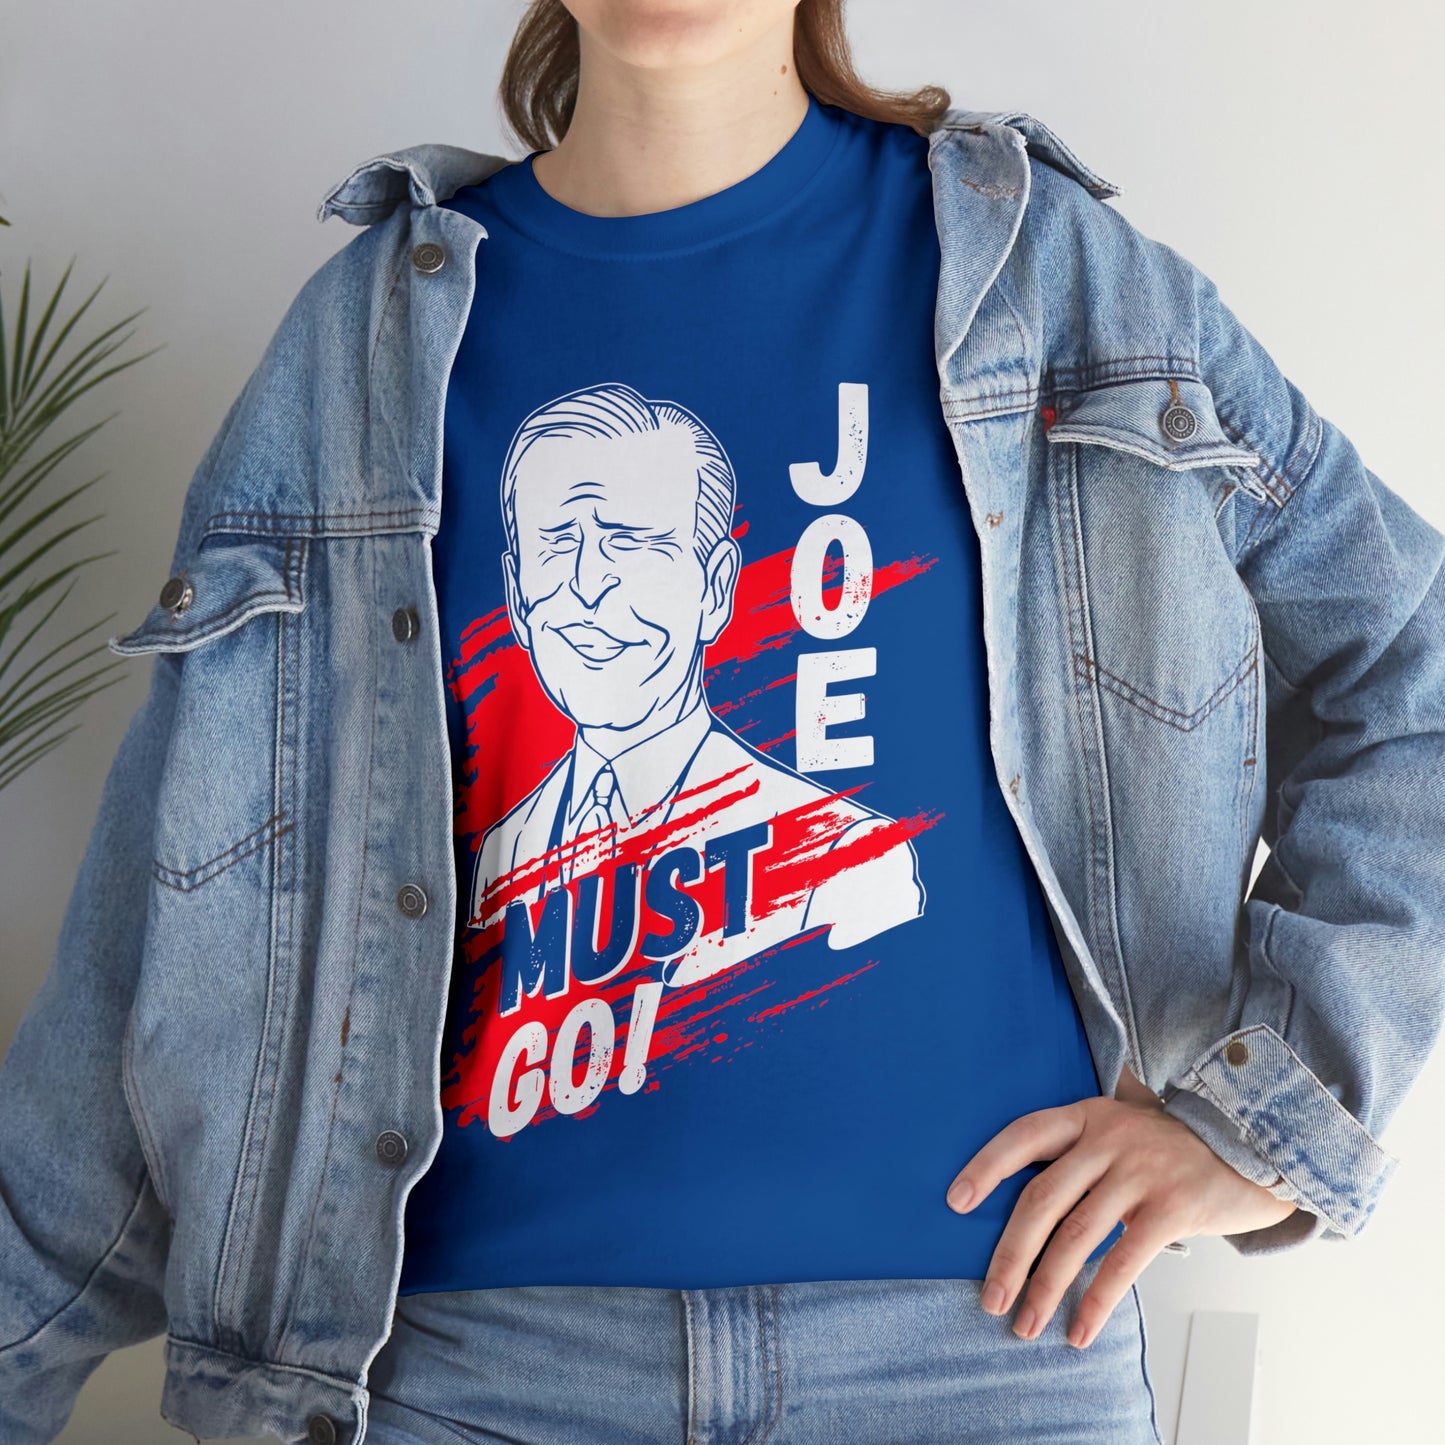 'Joe Must Go' - Funny Joe Biden shirt